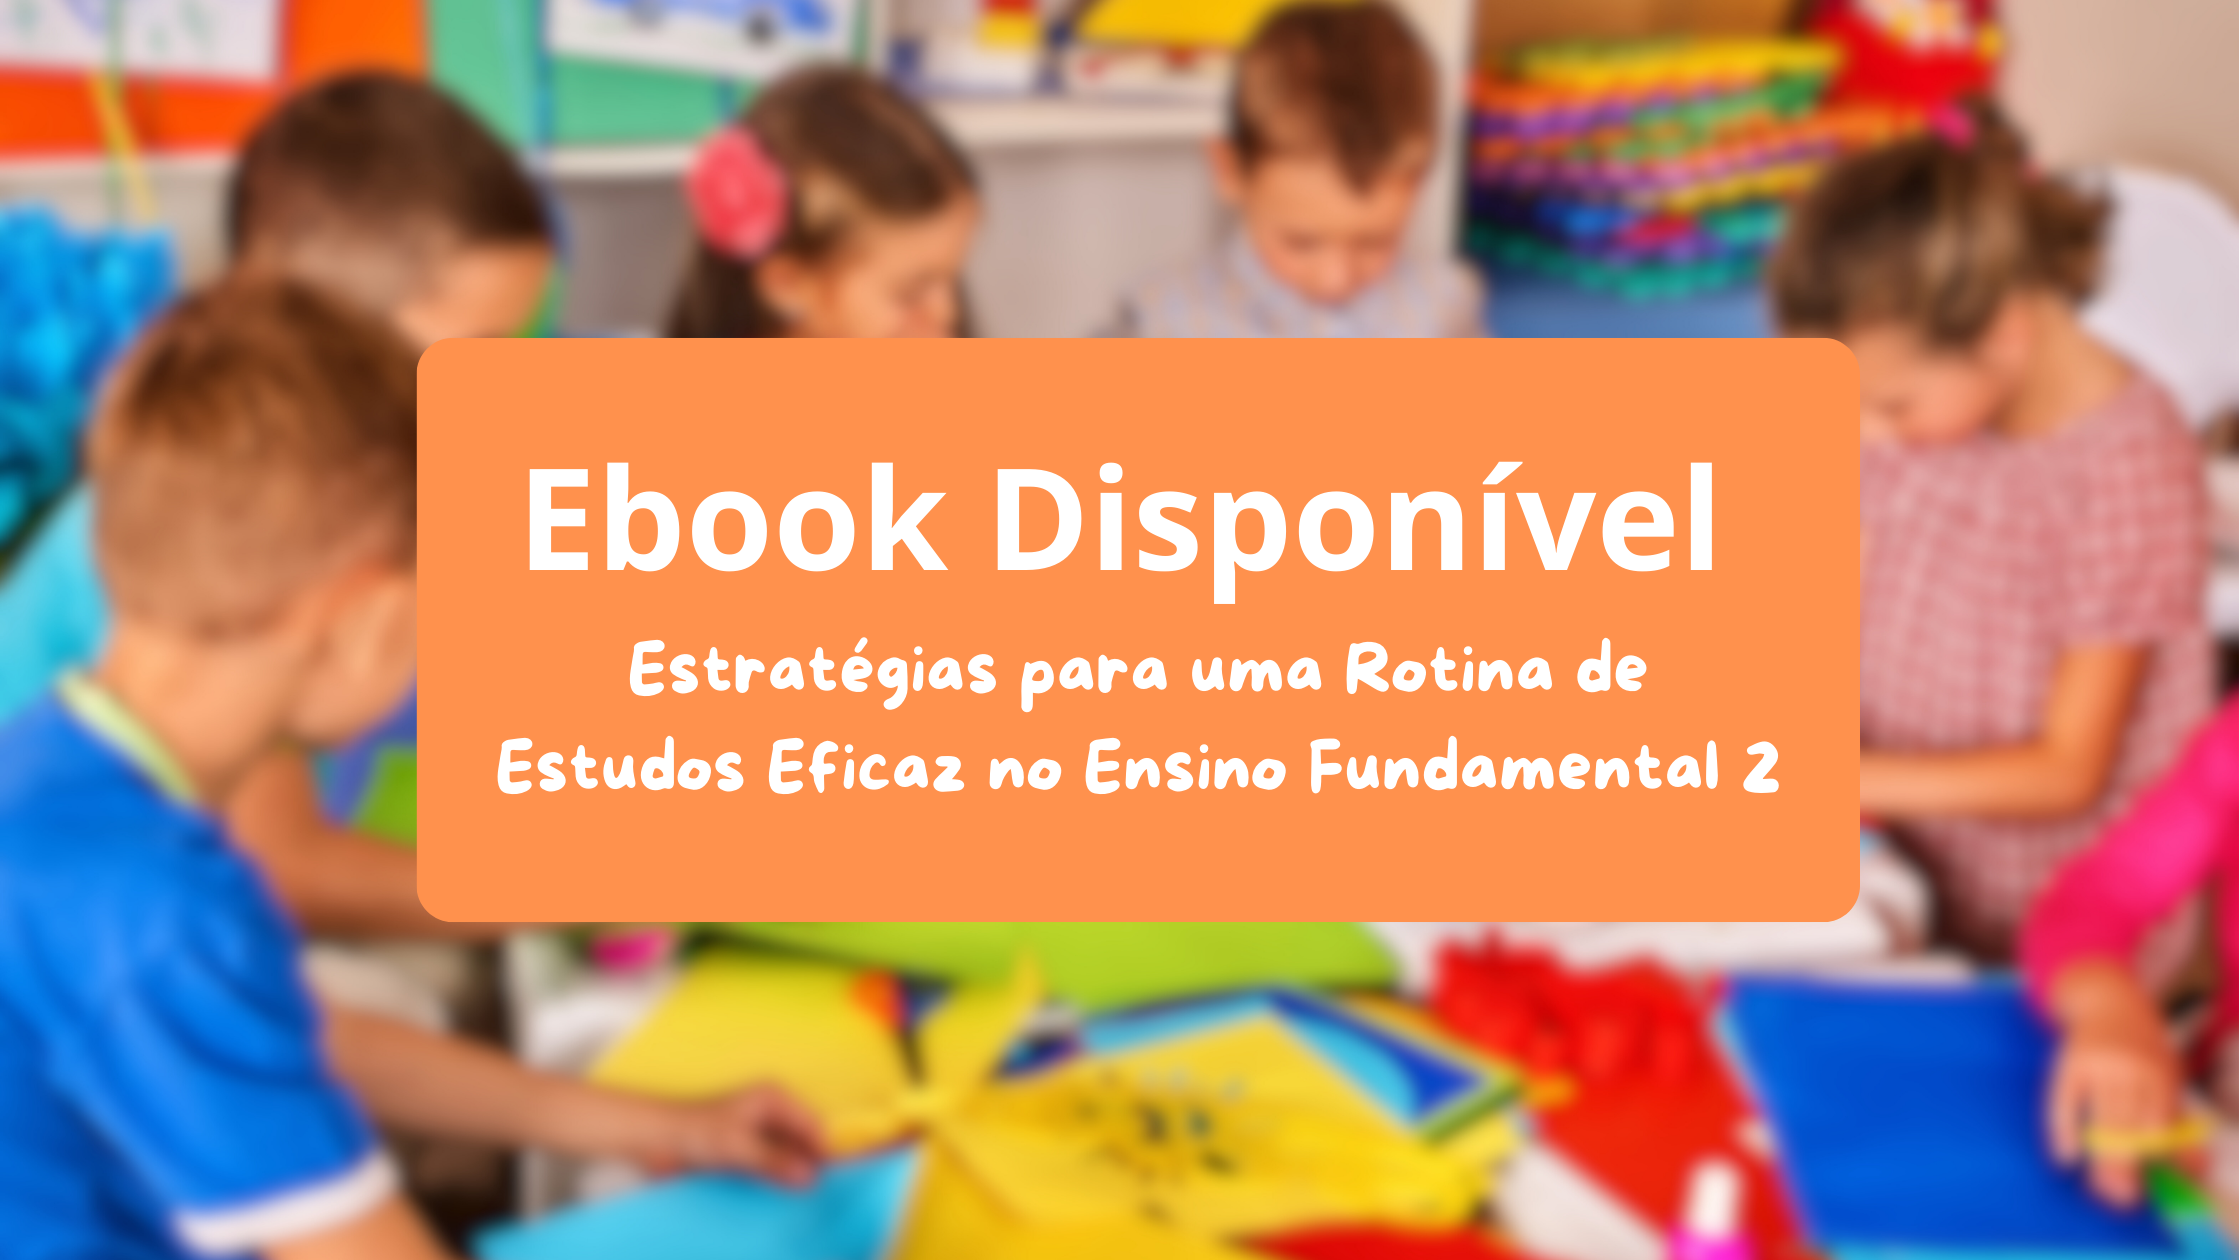 Colégio Aprovado Lança Ebook “Estratégias para uma Rotina de Estudos Eficaz no Ensino Fundamental 2”